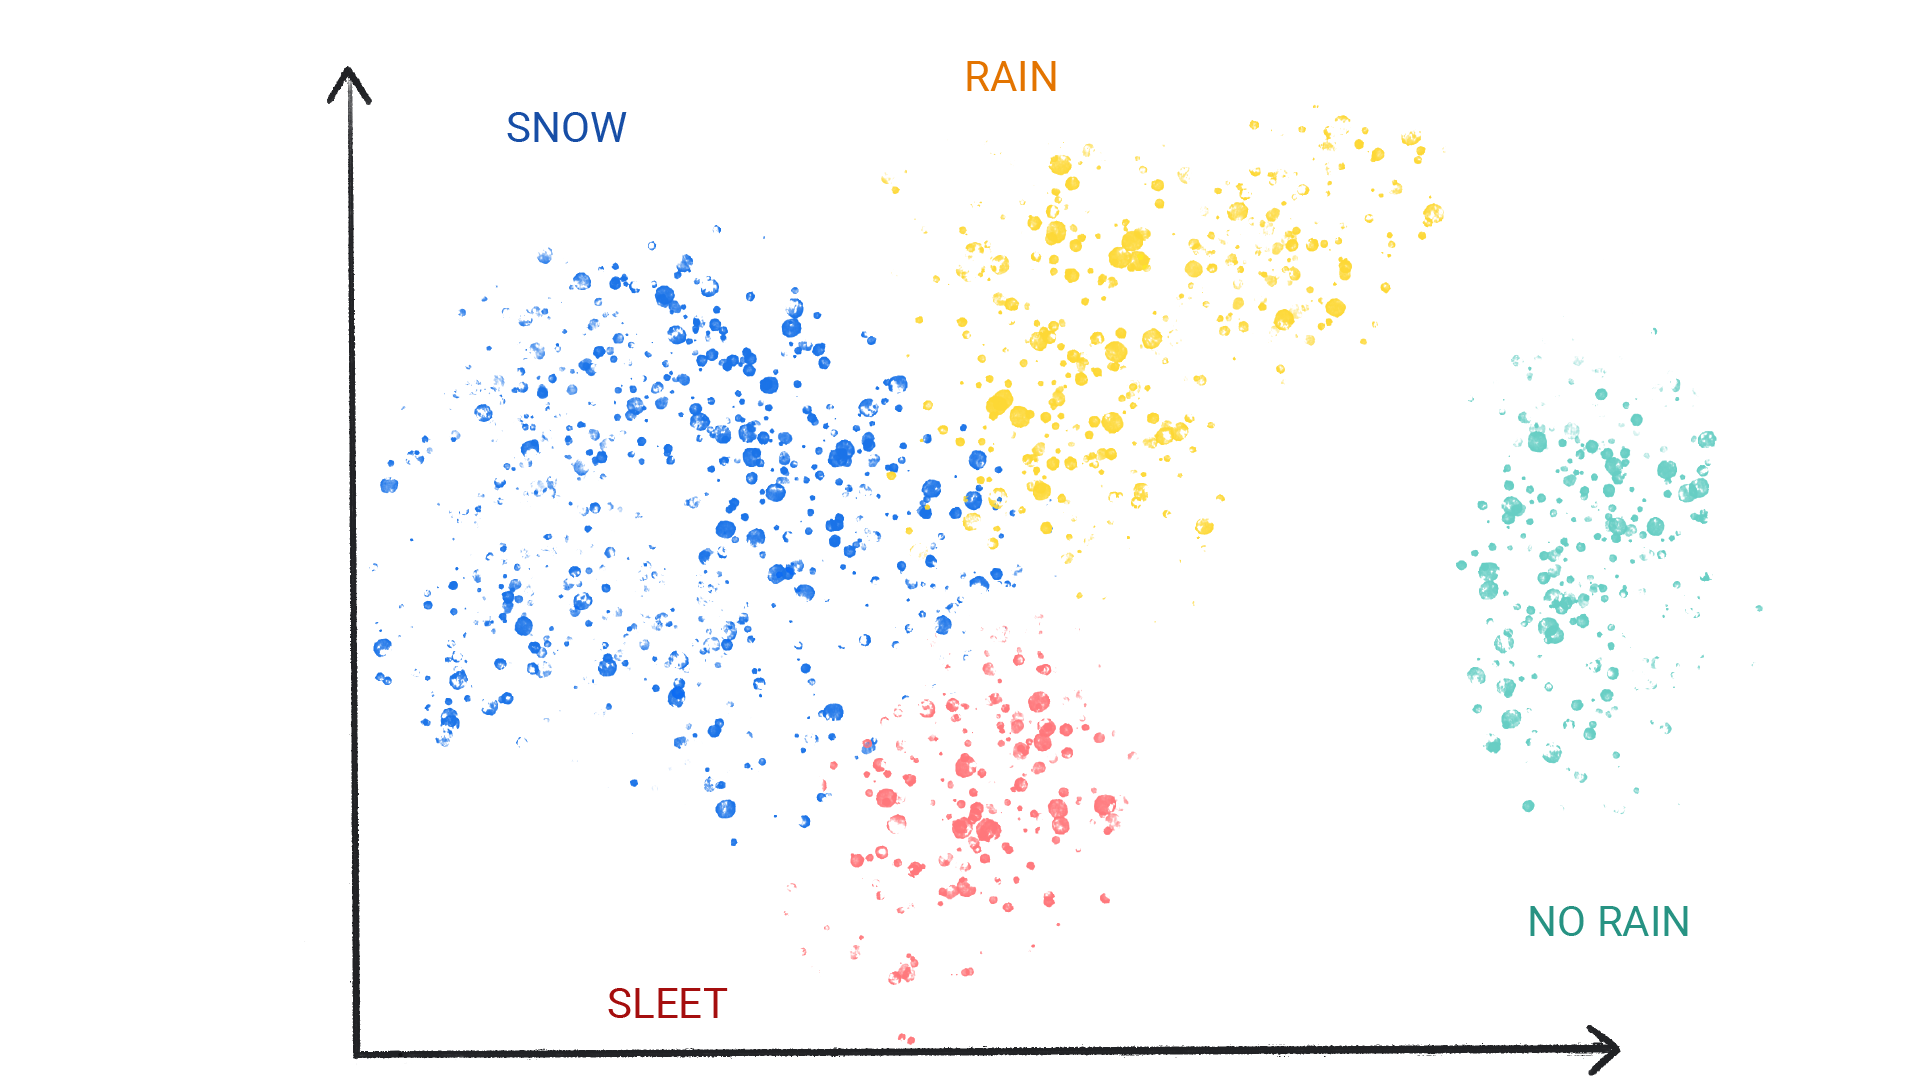 תמונה שמציגה נקודות צבעוניות באשכולות שמסומנים כשלג, גשם, ברד וללא גשם.